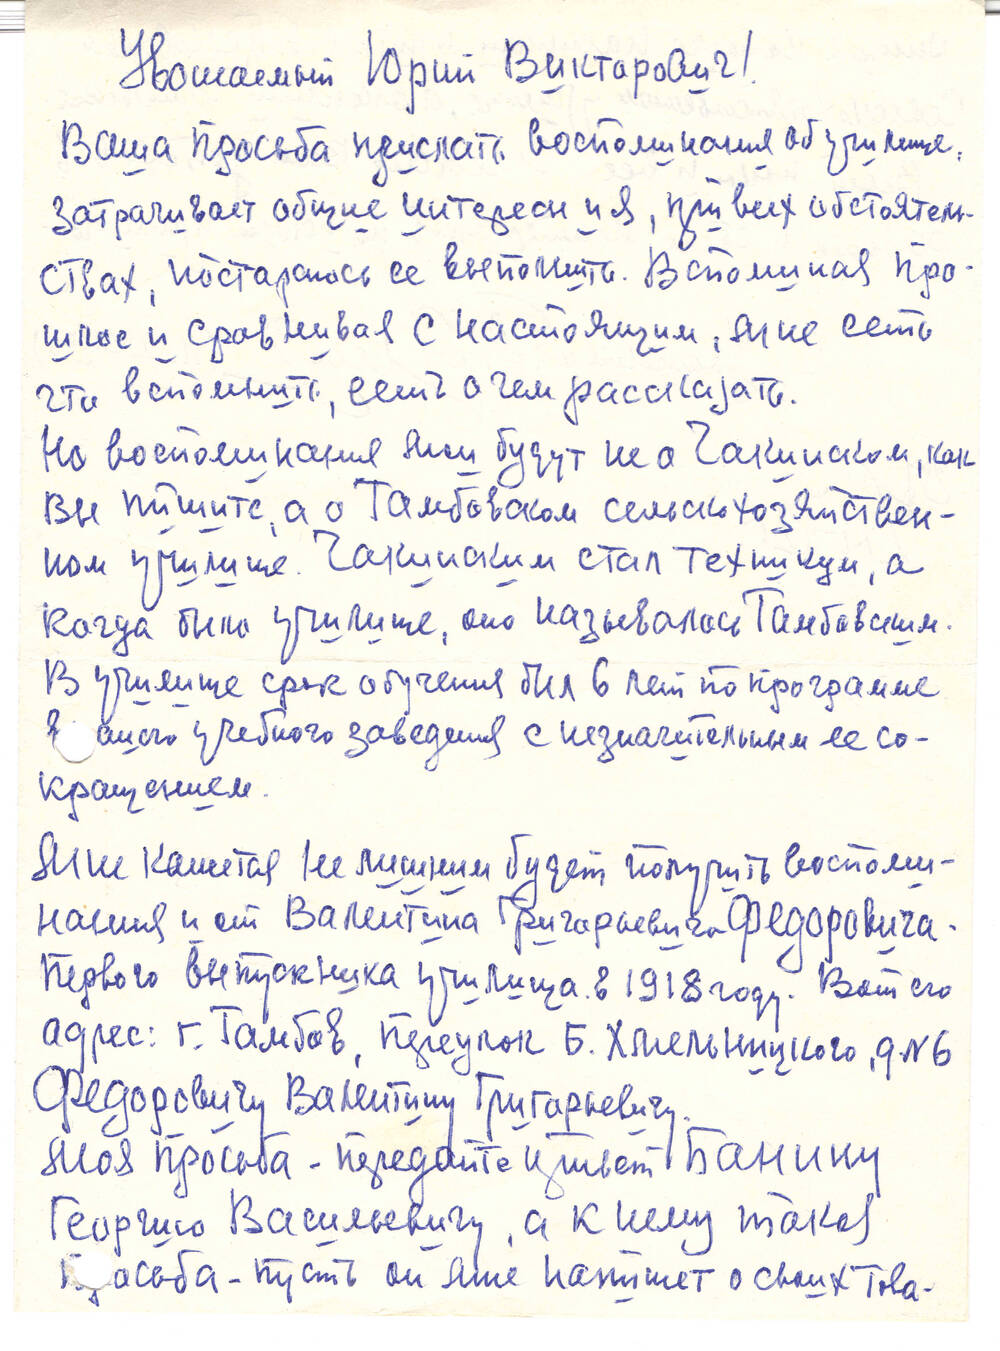 Письмо от П.Ярцева от 27.11.1972 г.